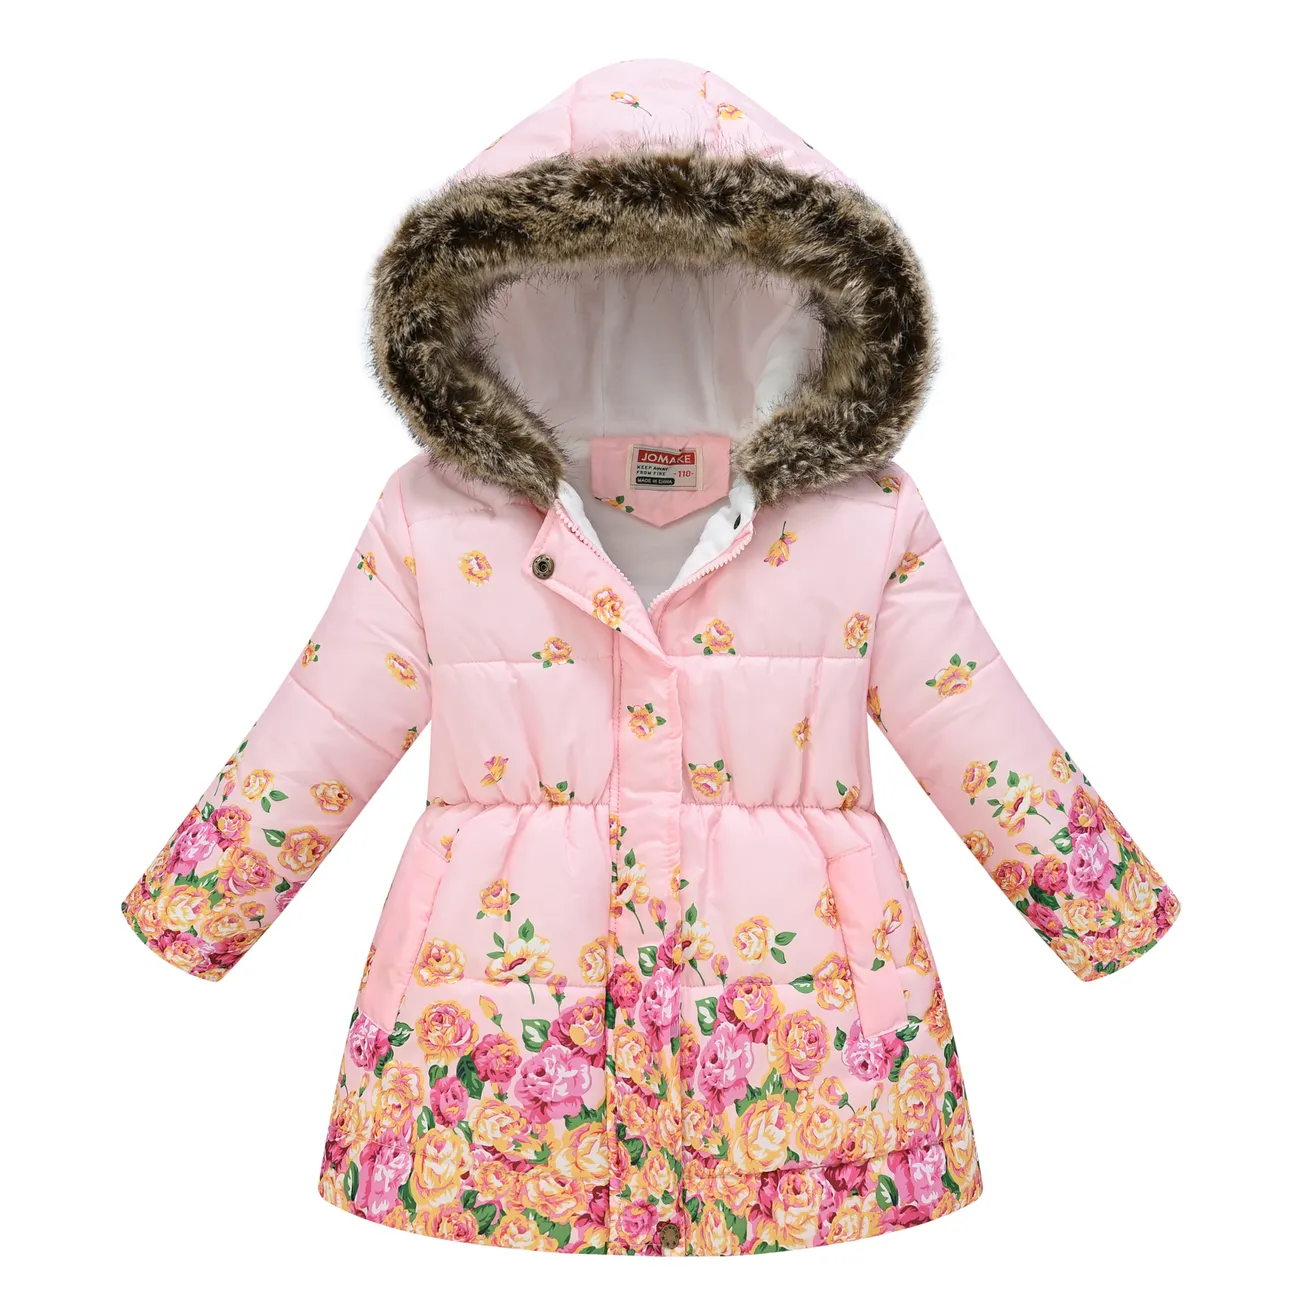  Toddler/Kid Girl Sweet Fleece-lining Hooded Jacket  big image 1